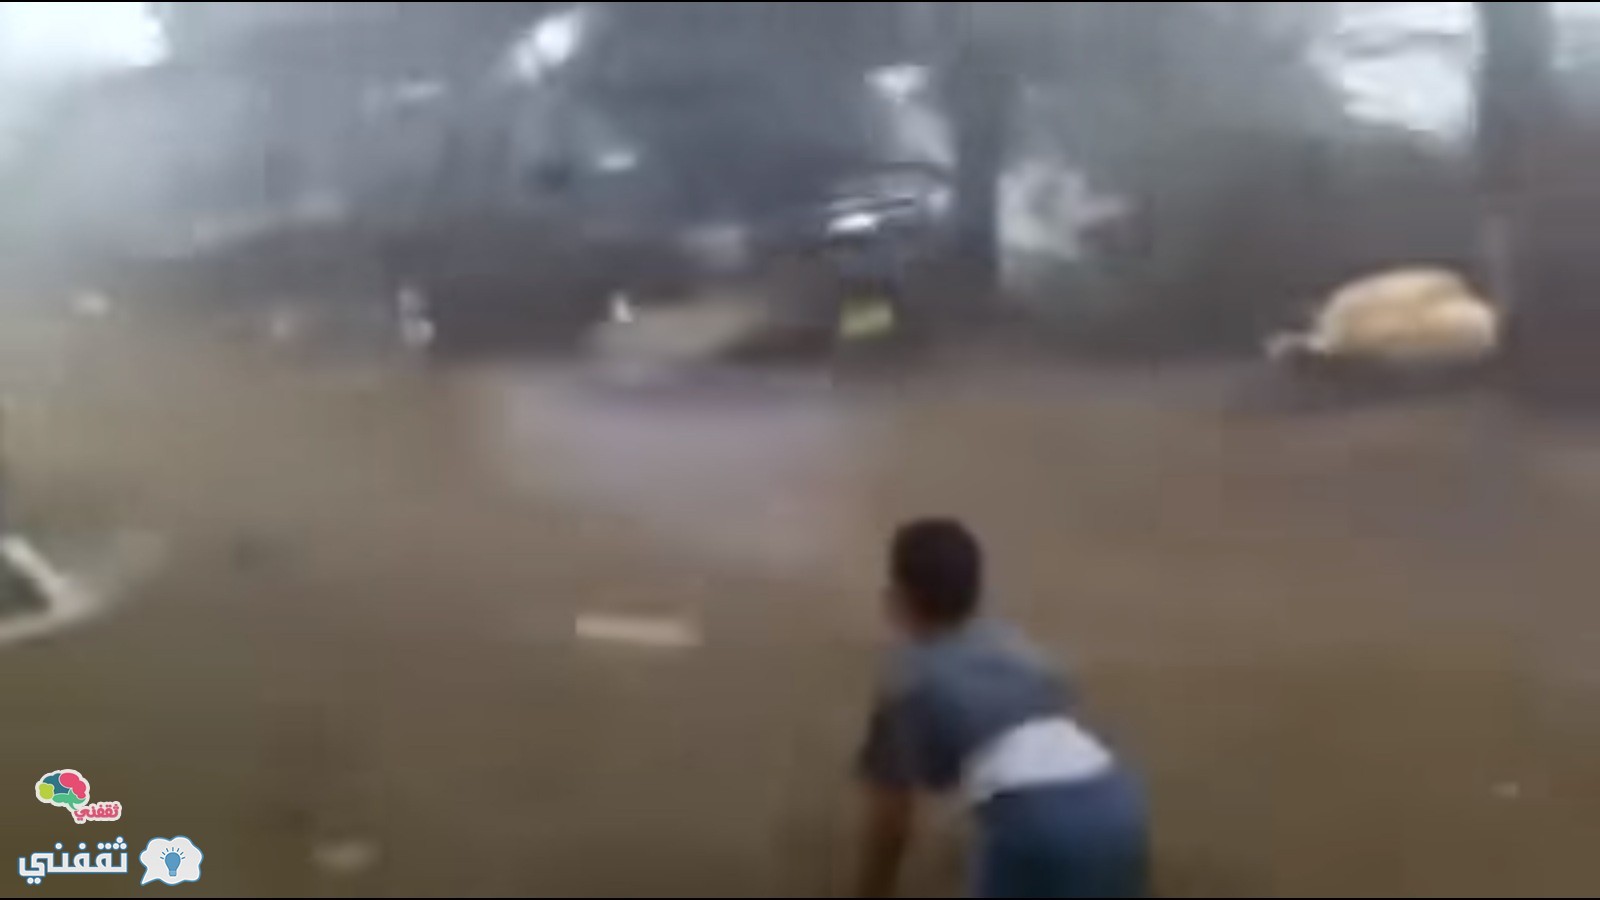 فيديو: لحظة وصول إعصار تشابالا إلى عمان و هروب الناس منة و حجم الدمار الهائل